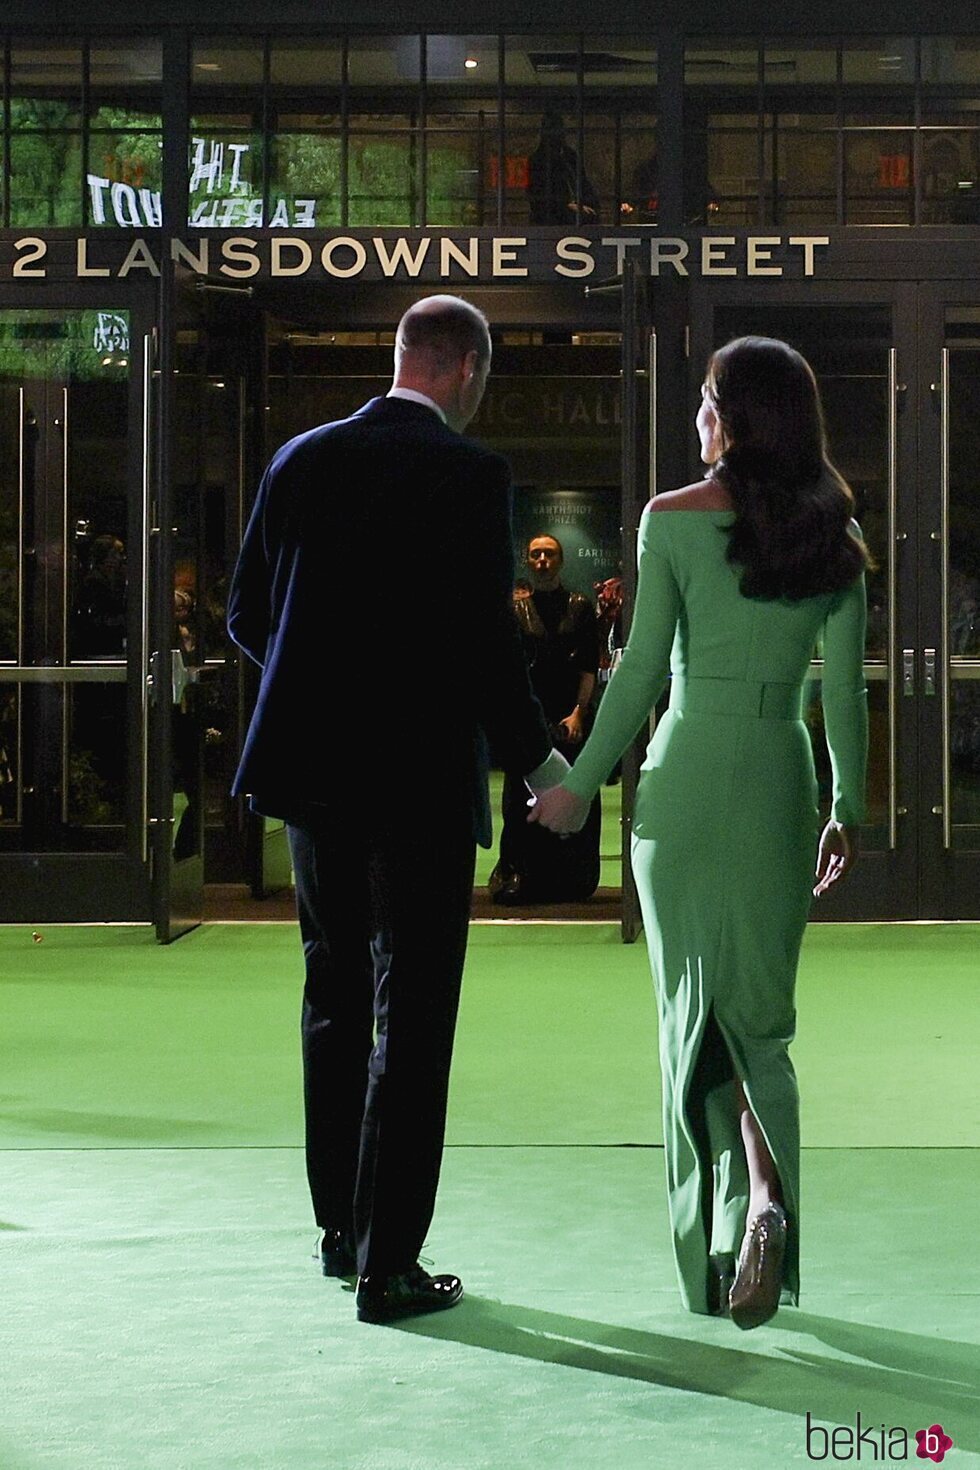 El Príncipe Guillermo y Kate Middleton cogidos de la manos en los Earthshot Prize 2022